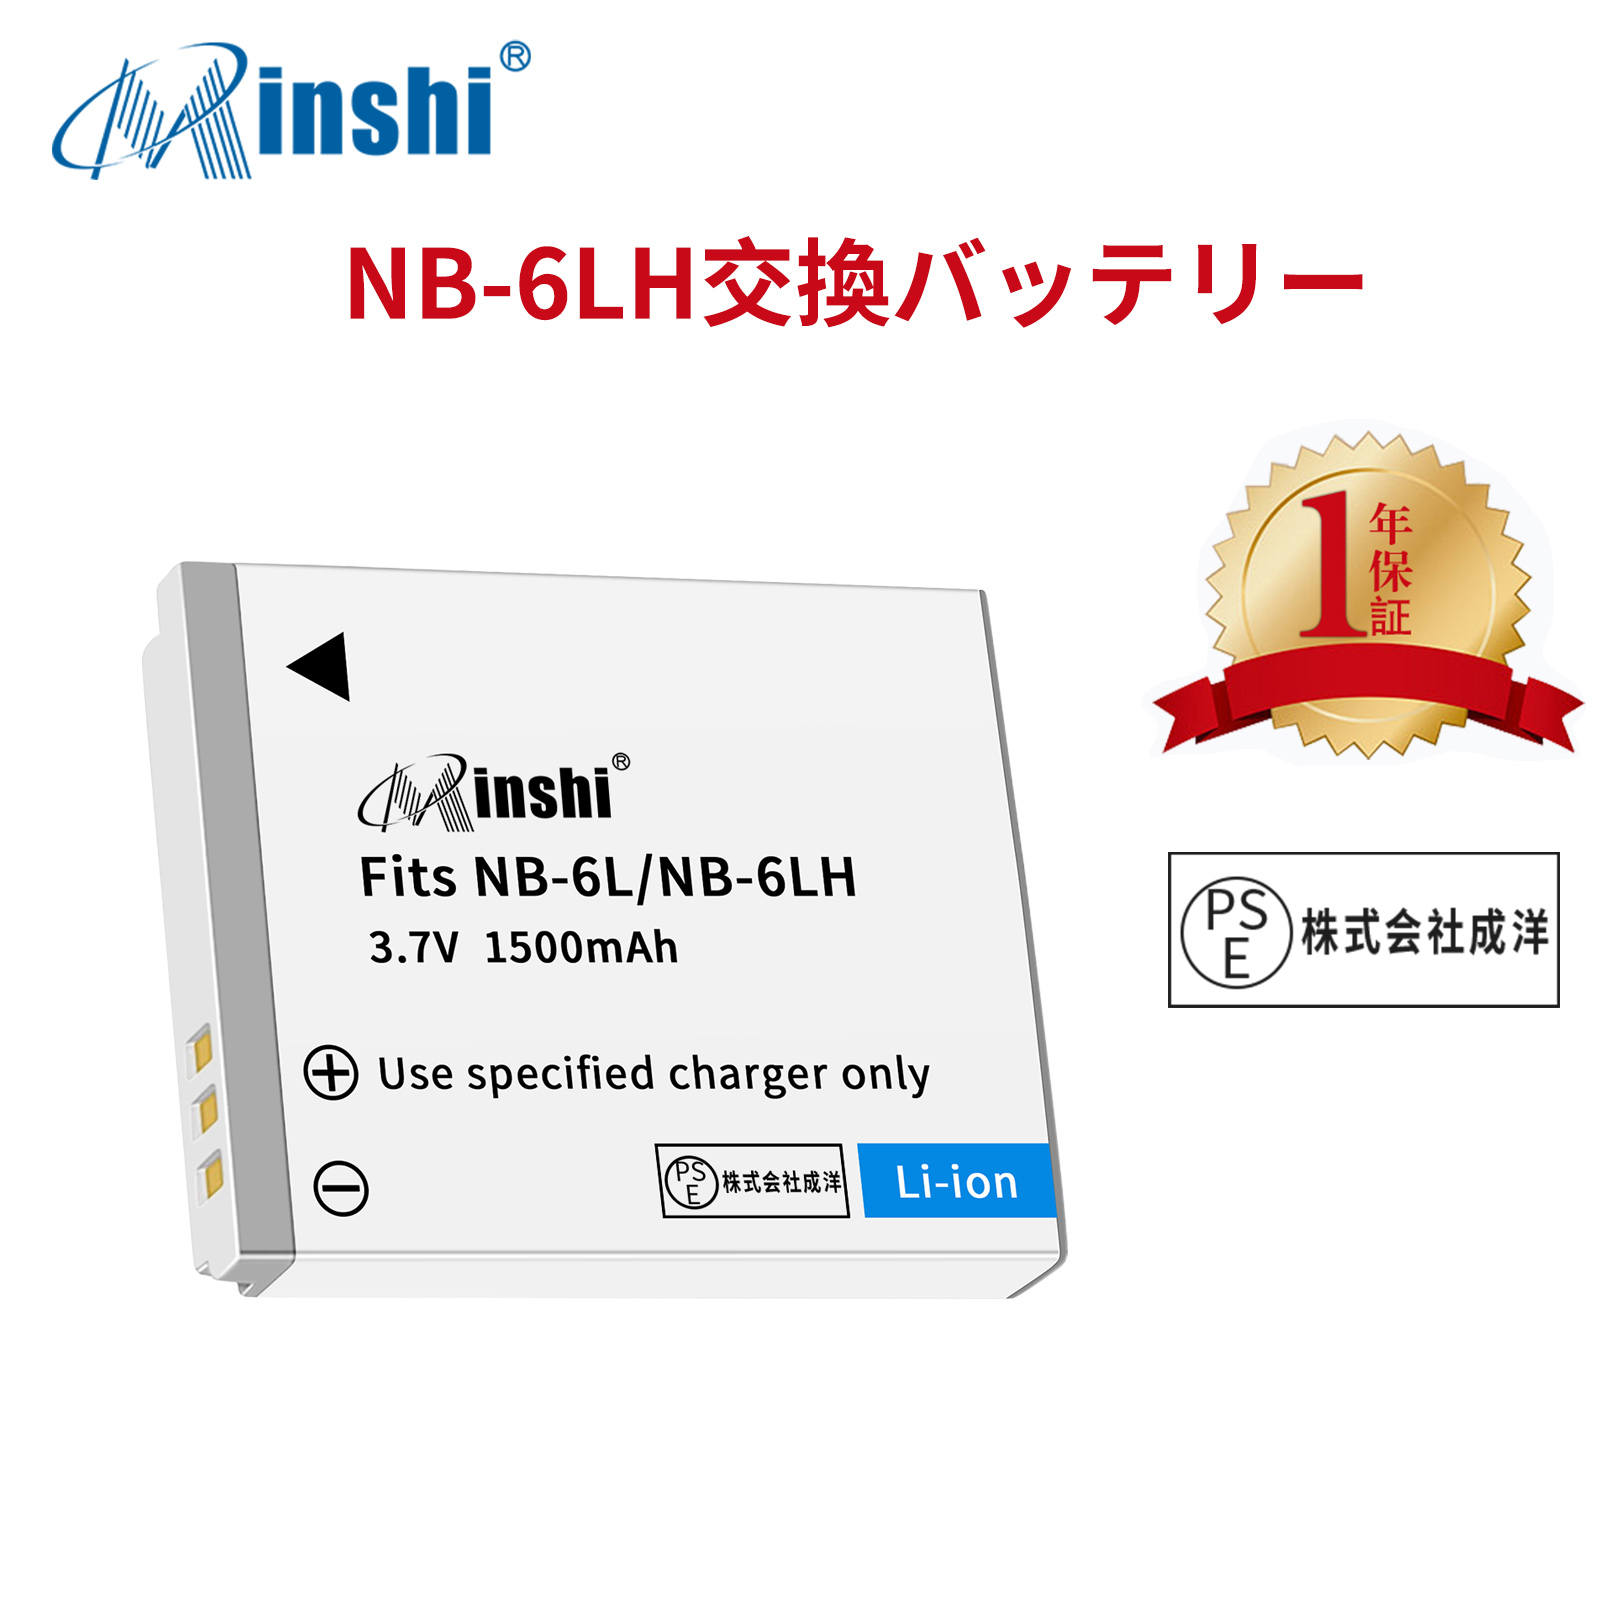 【1年保証】minshi Canon IXUS 200 IS NB-6L   NB-6L【1500mAh 3.7V】PSE認定済 高品質 NB-6LH 交換用バッテリー